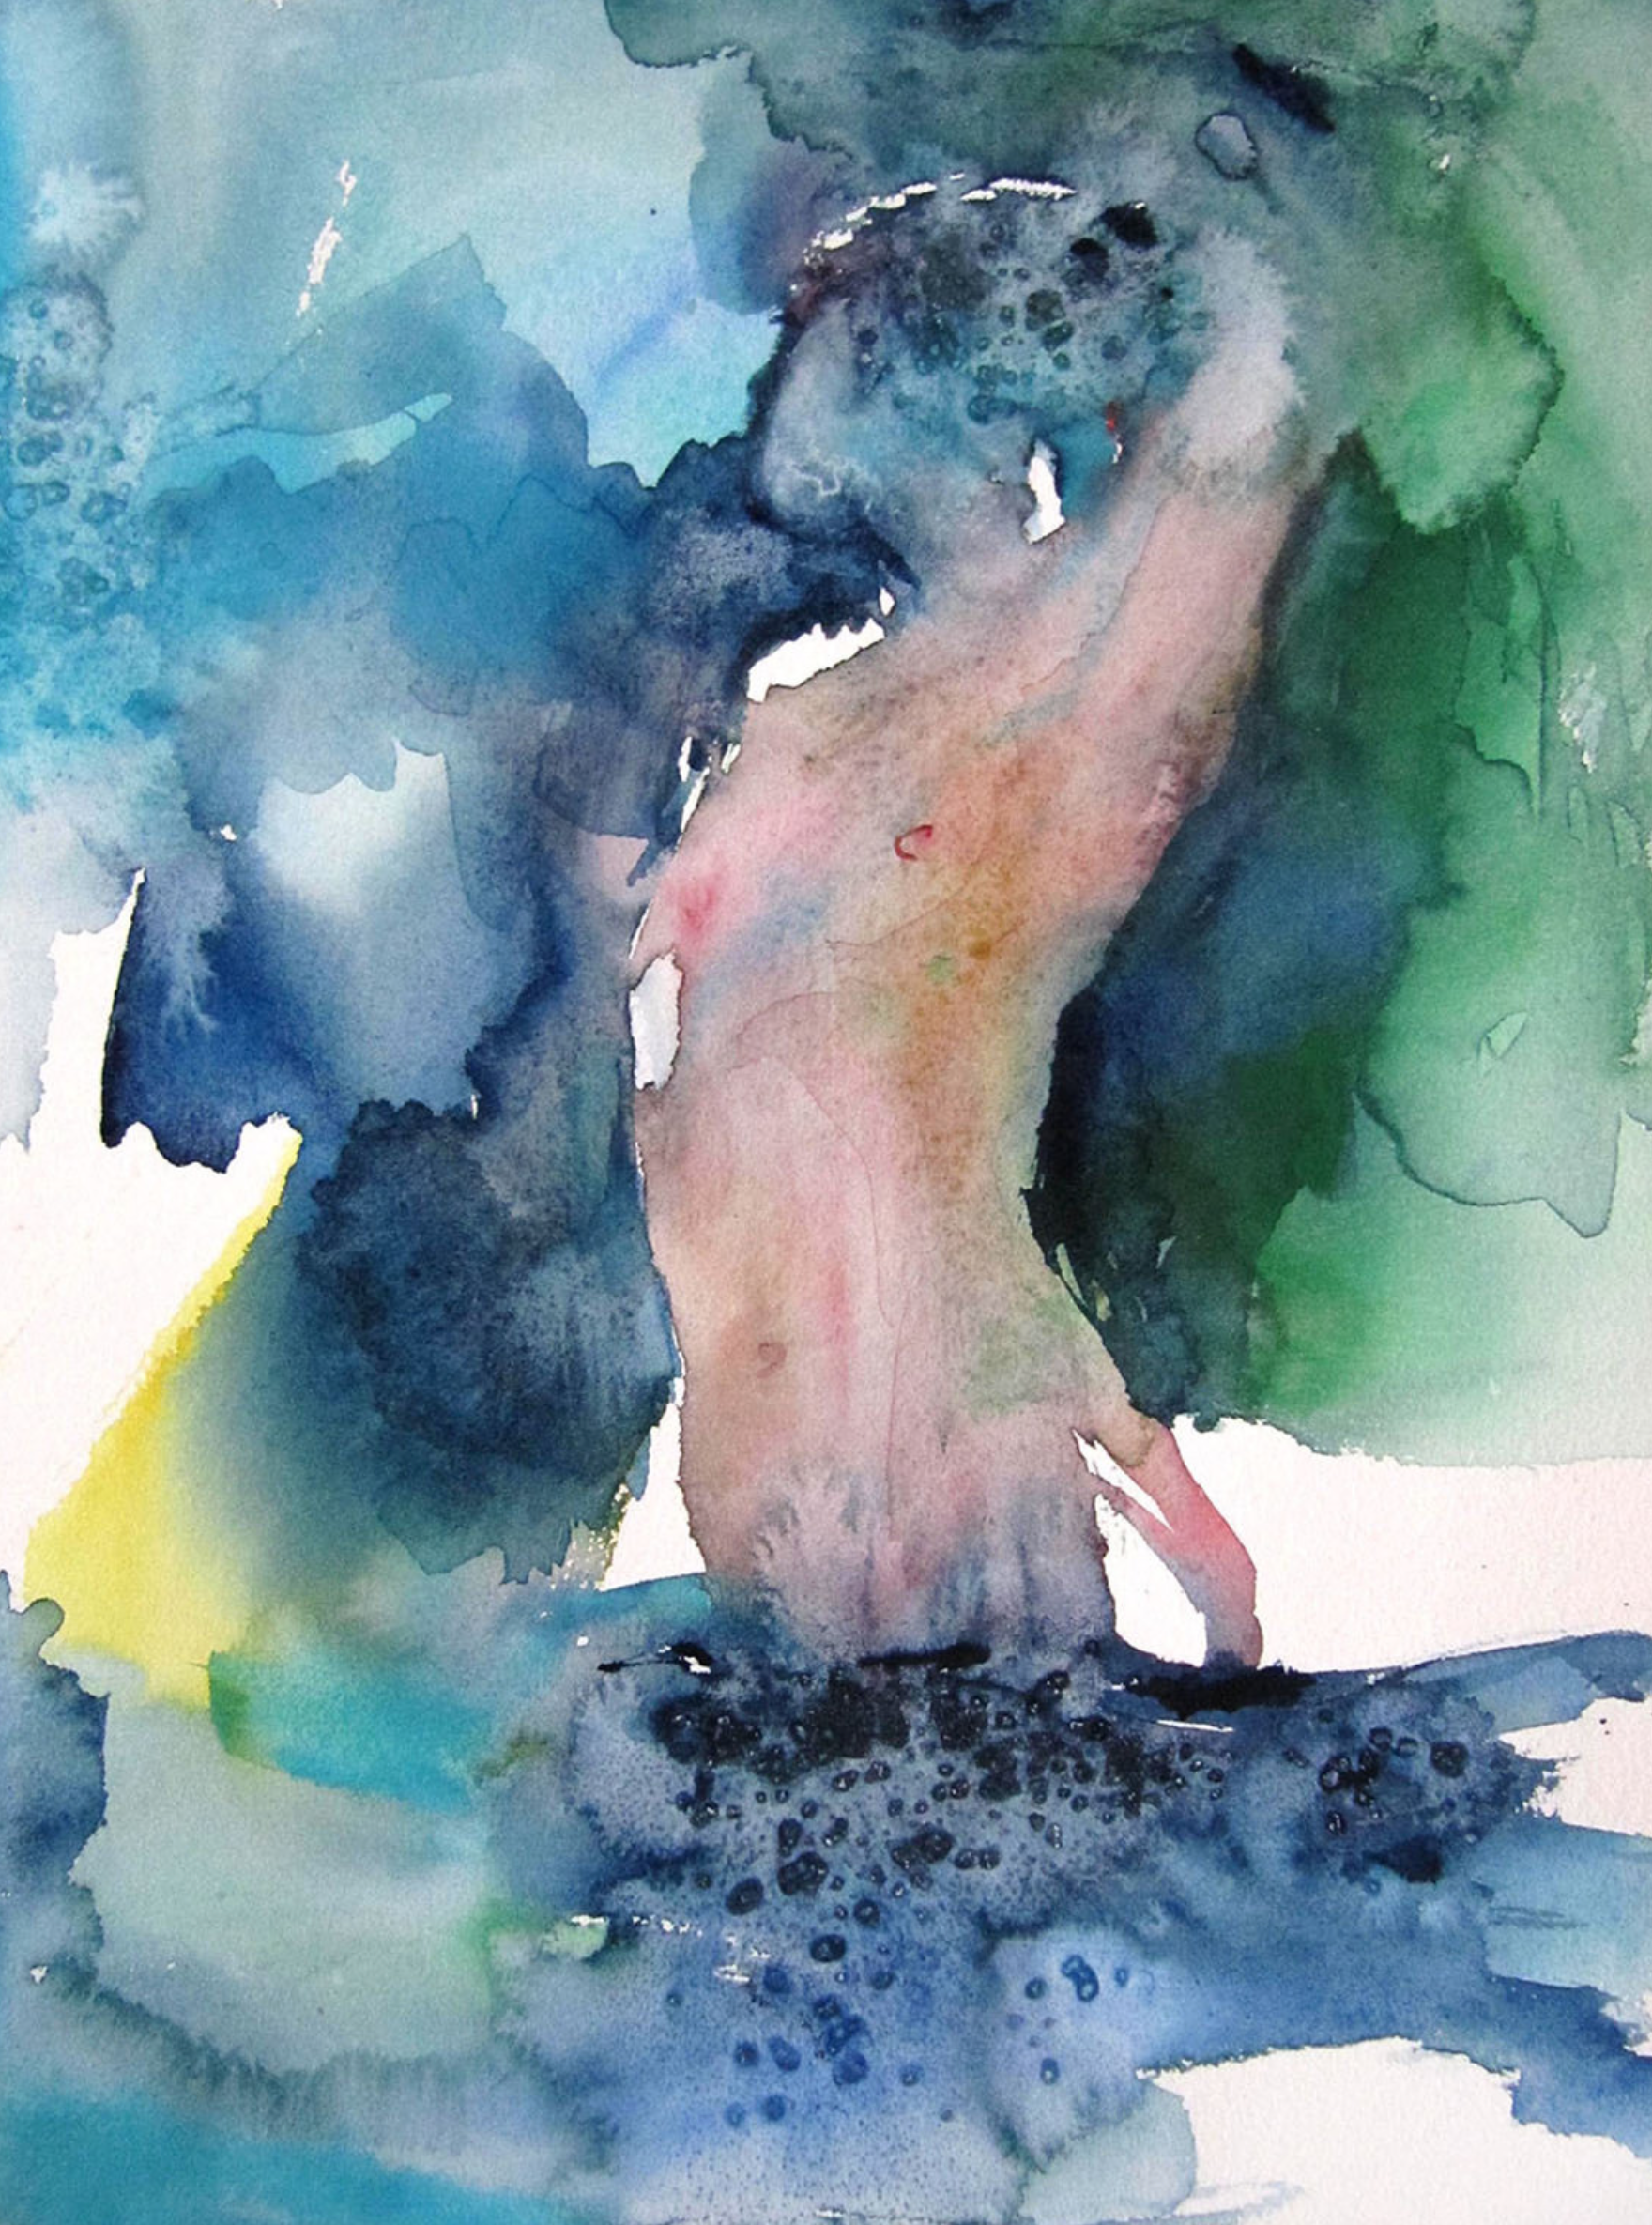 Dans la source" de Sylvia Baldeva es un cuadro pintado en acuarela, semiabstracto. Soñador, sueño, desnudo, cuerpo, mujer, fuente, agua, expresionismo, acuarela sobre papel Canson®.